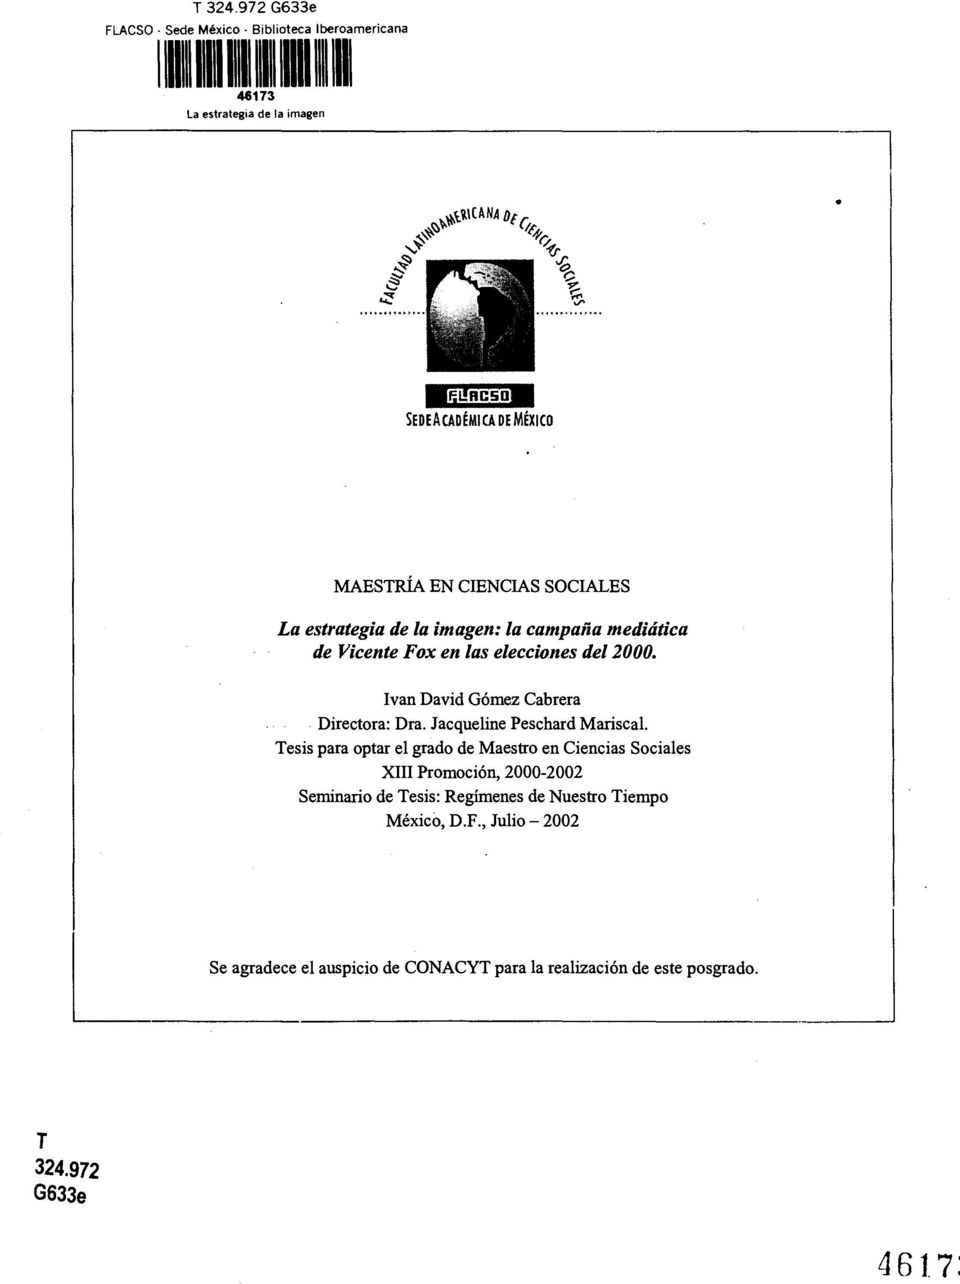 Tesis para optar el grado de Maestro en Ciencias Sociales XIII Promoción, 2000-2002 Seminario de Tesis: